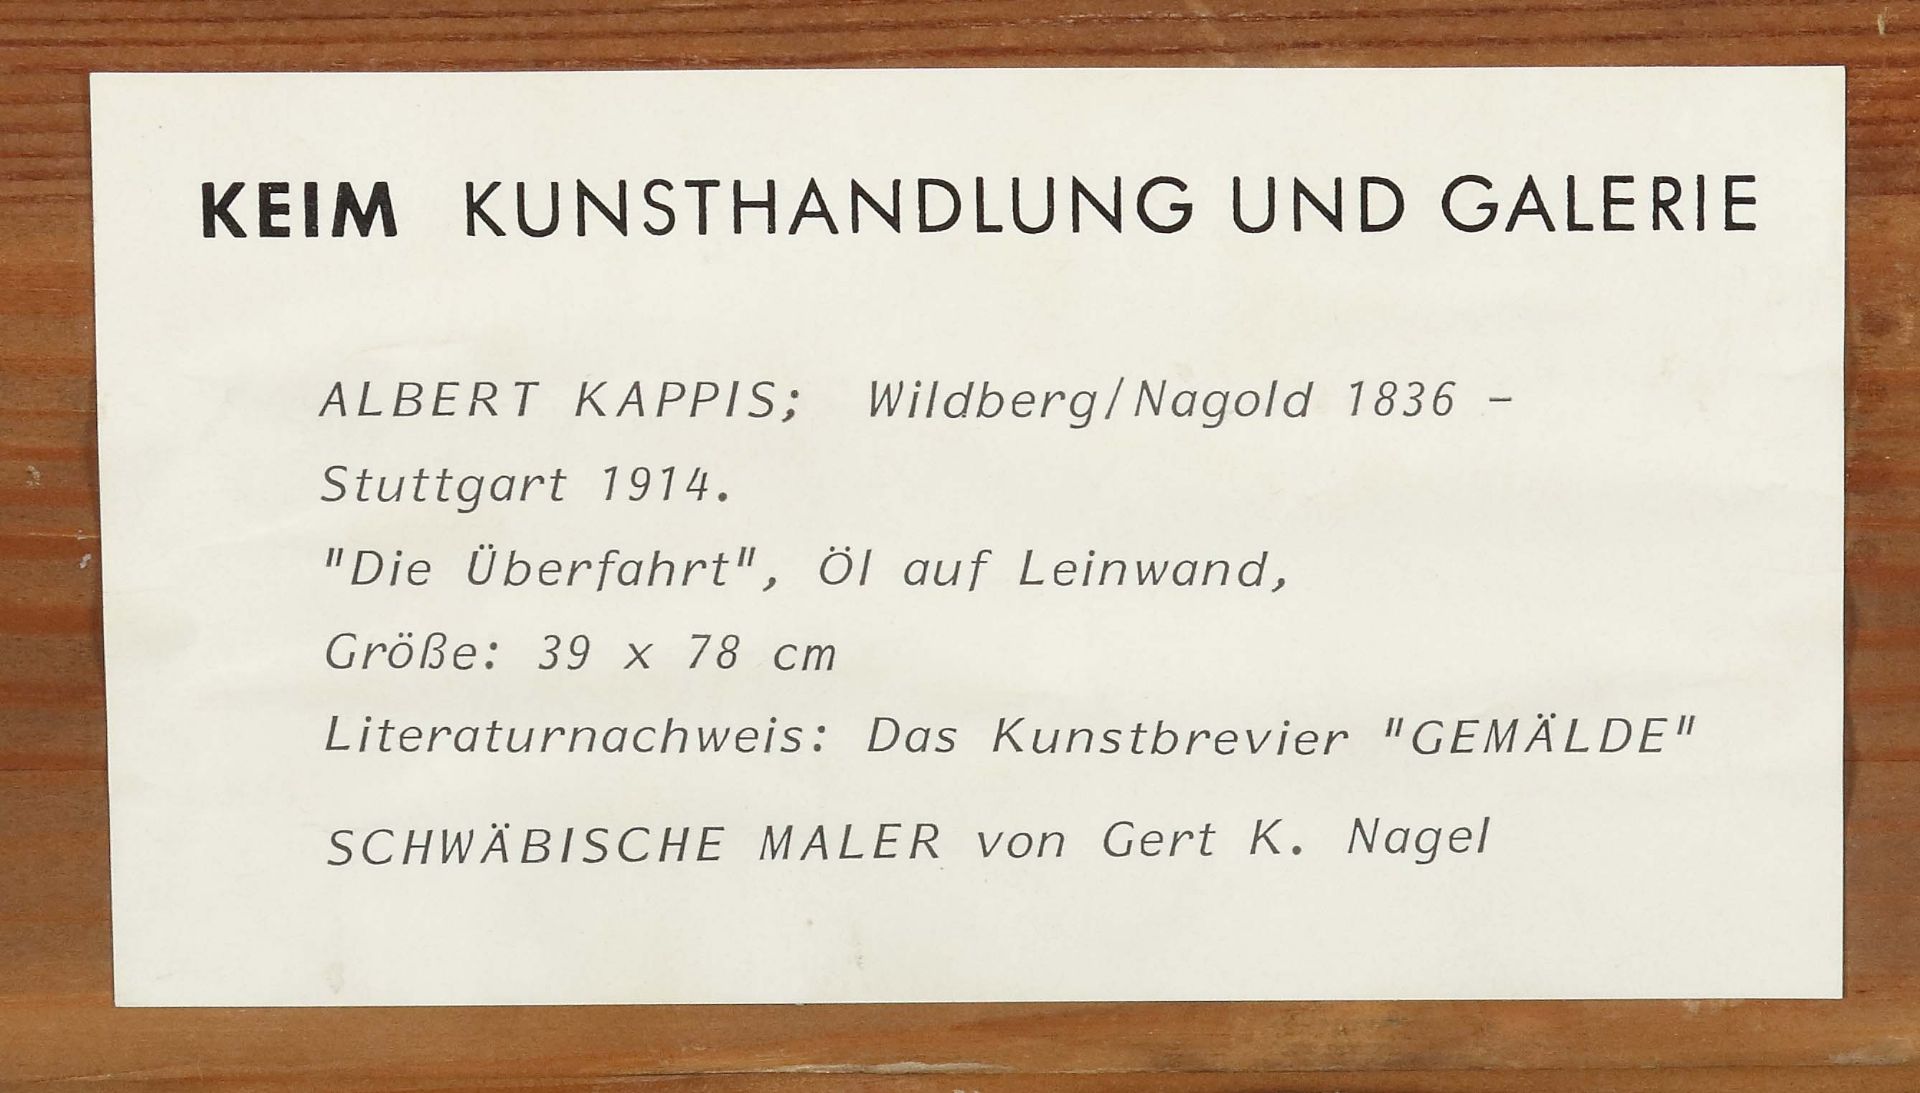 Kappis, Albert Wildberg/Nagold 1836 - - Image 5 of 5